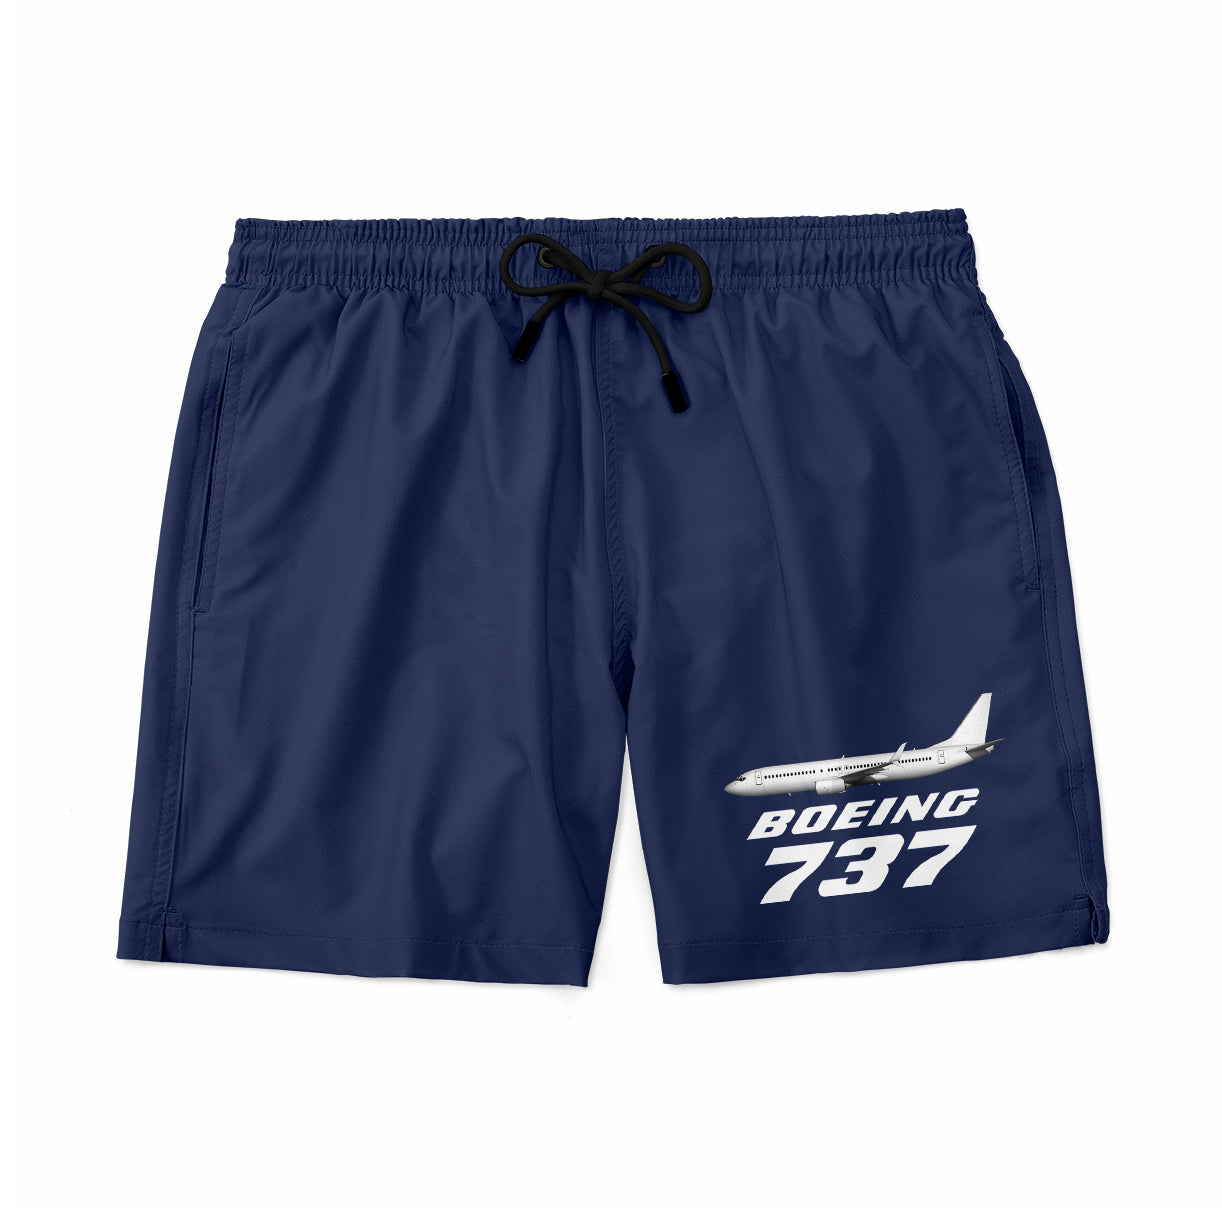 The Boeing 737 Designed Swim Trunks & Shorts